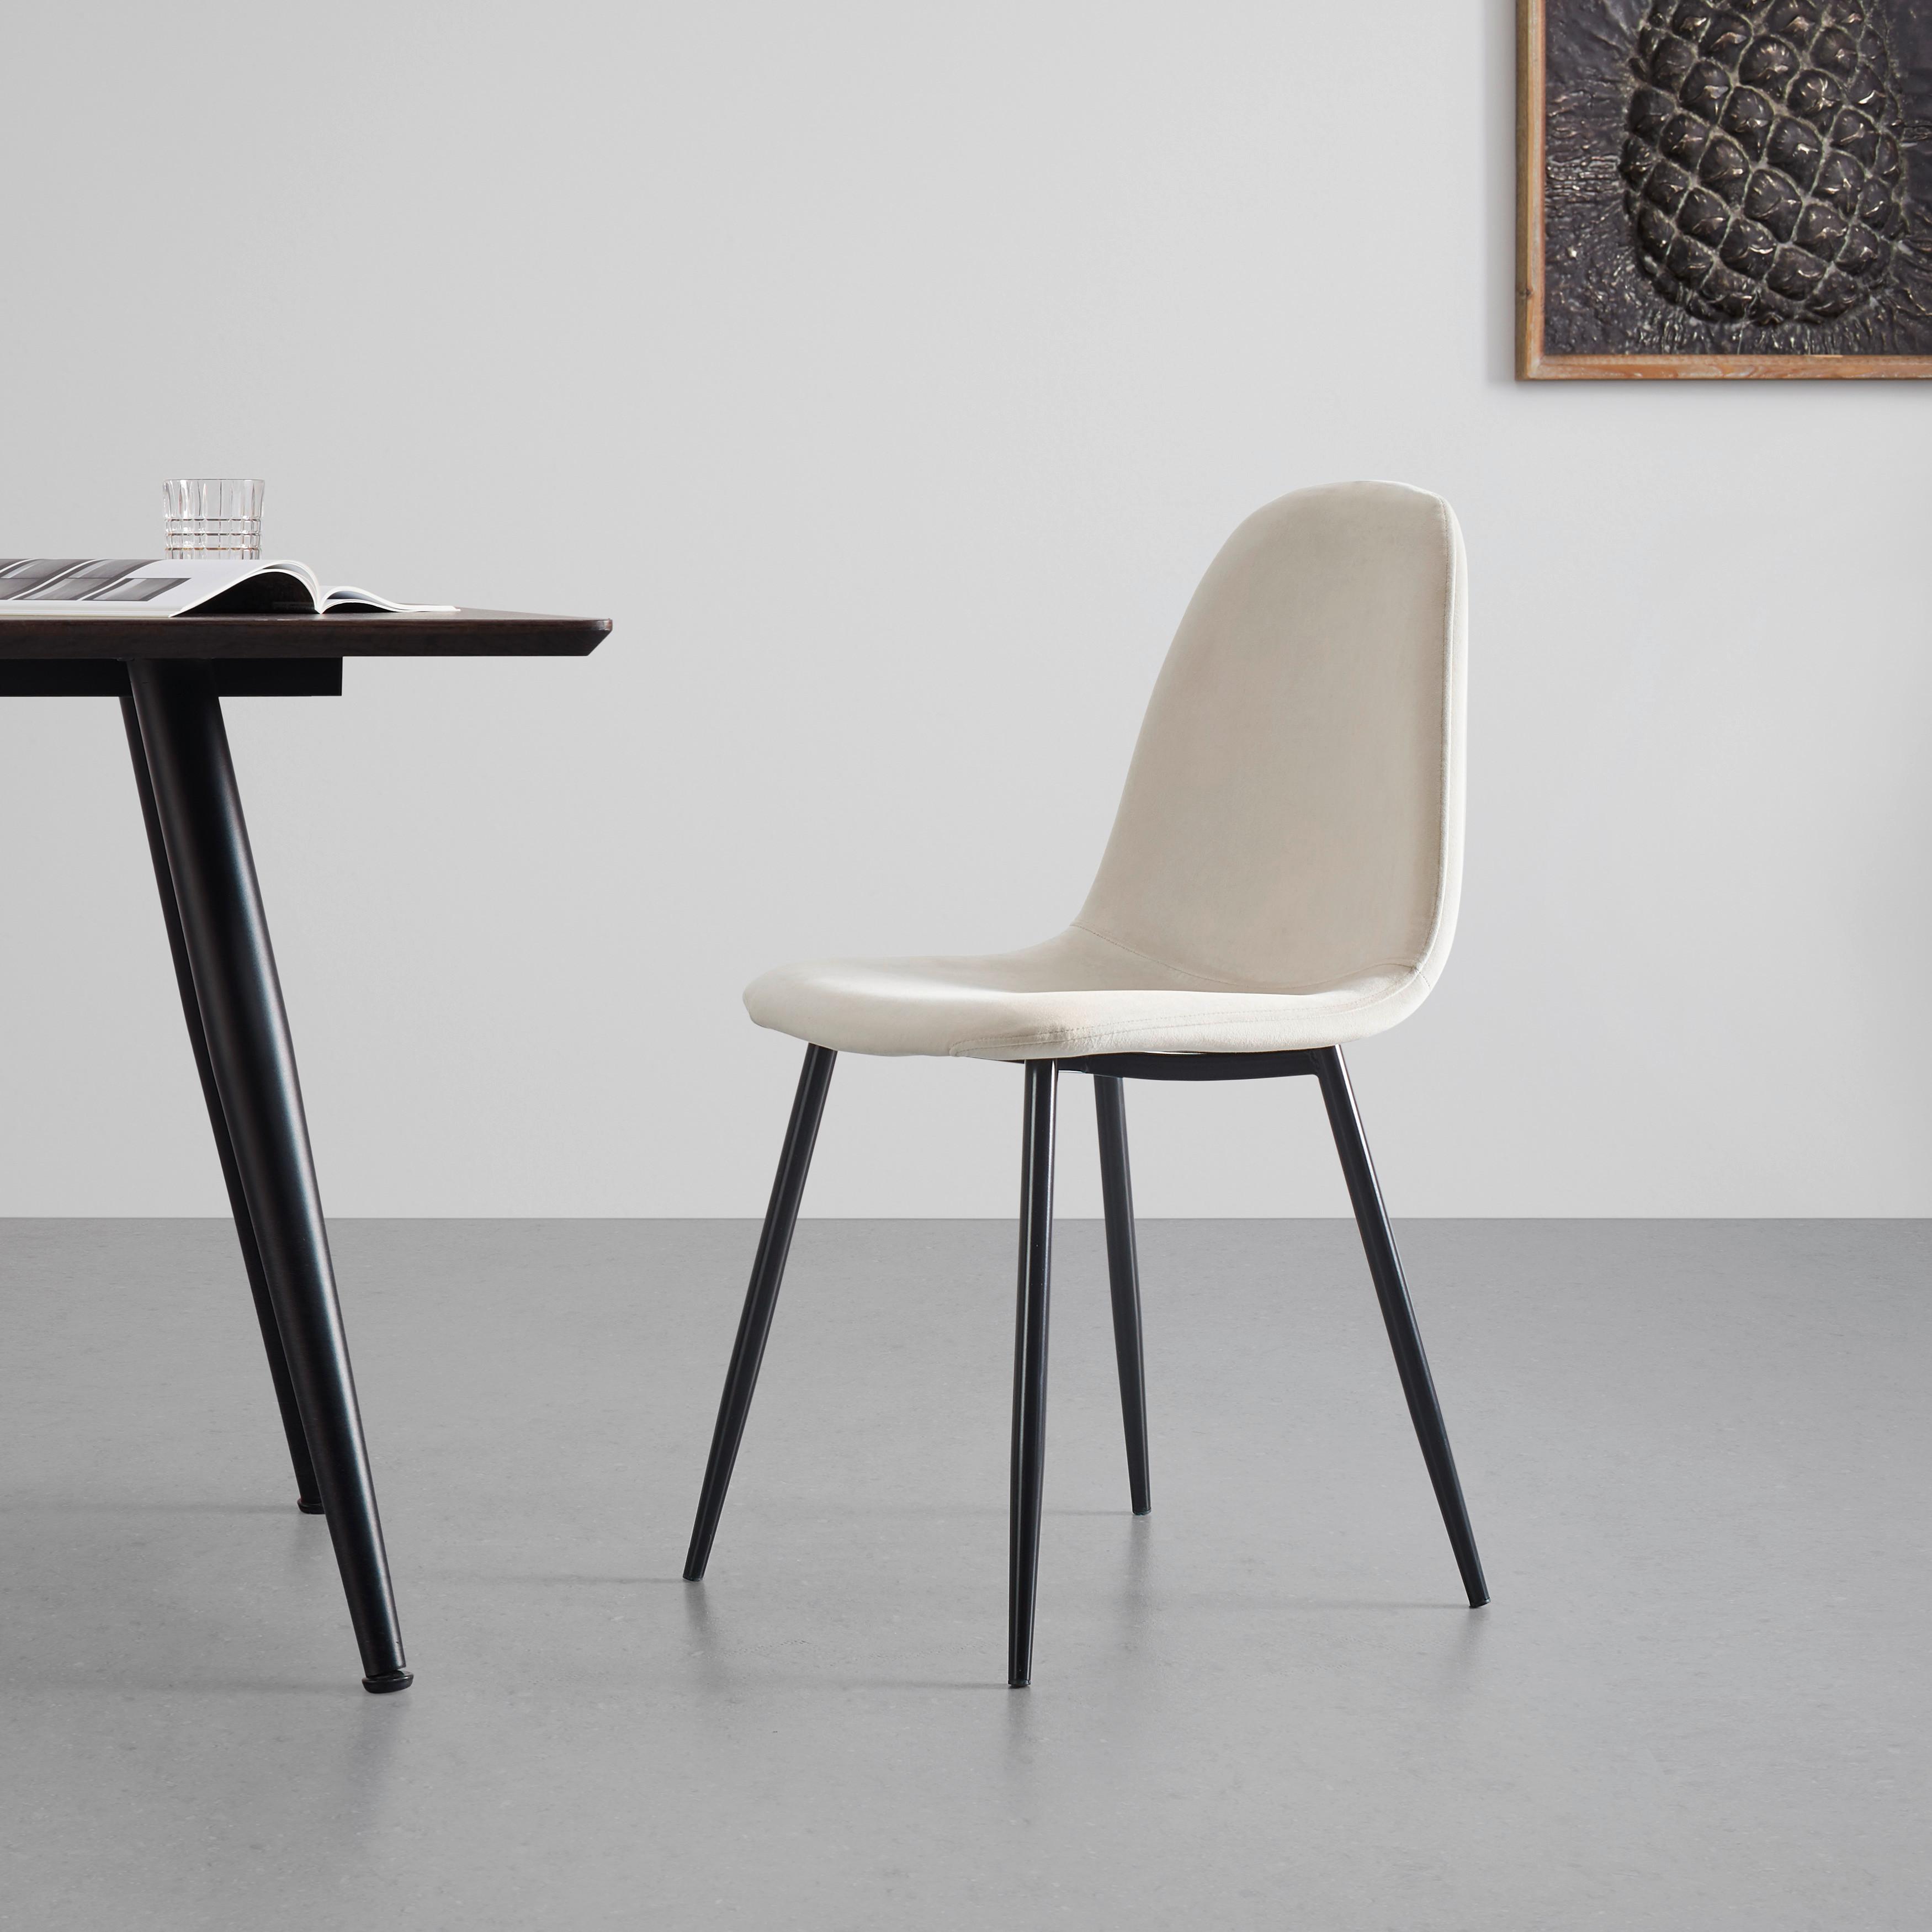 Stuhl "Lio", beige - Beige/Schwarz, MODERN, Holz/Textil (43/86/55cm) - Bessagi Home